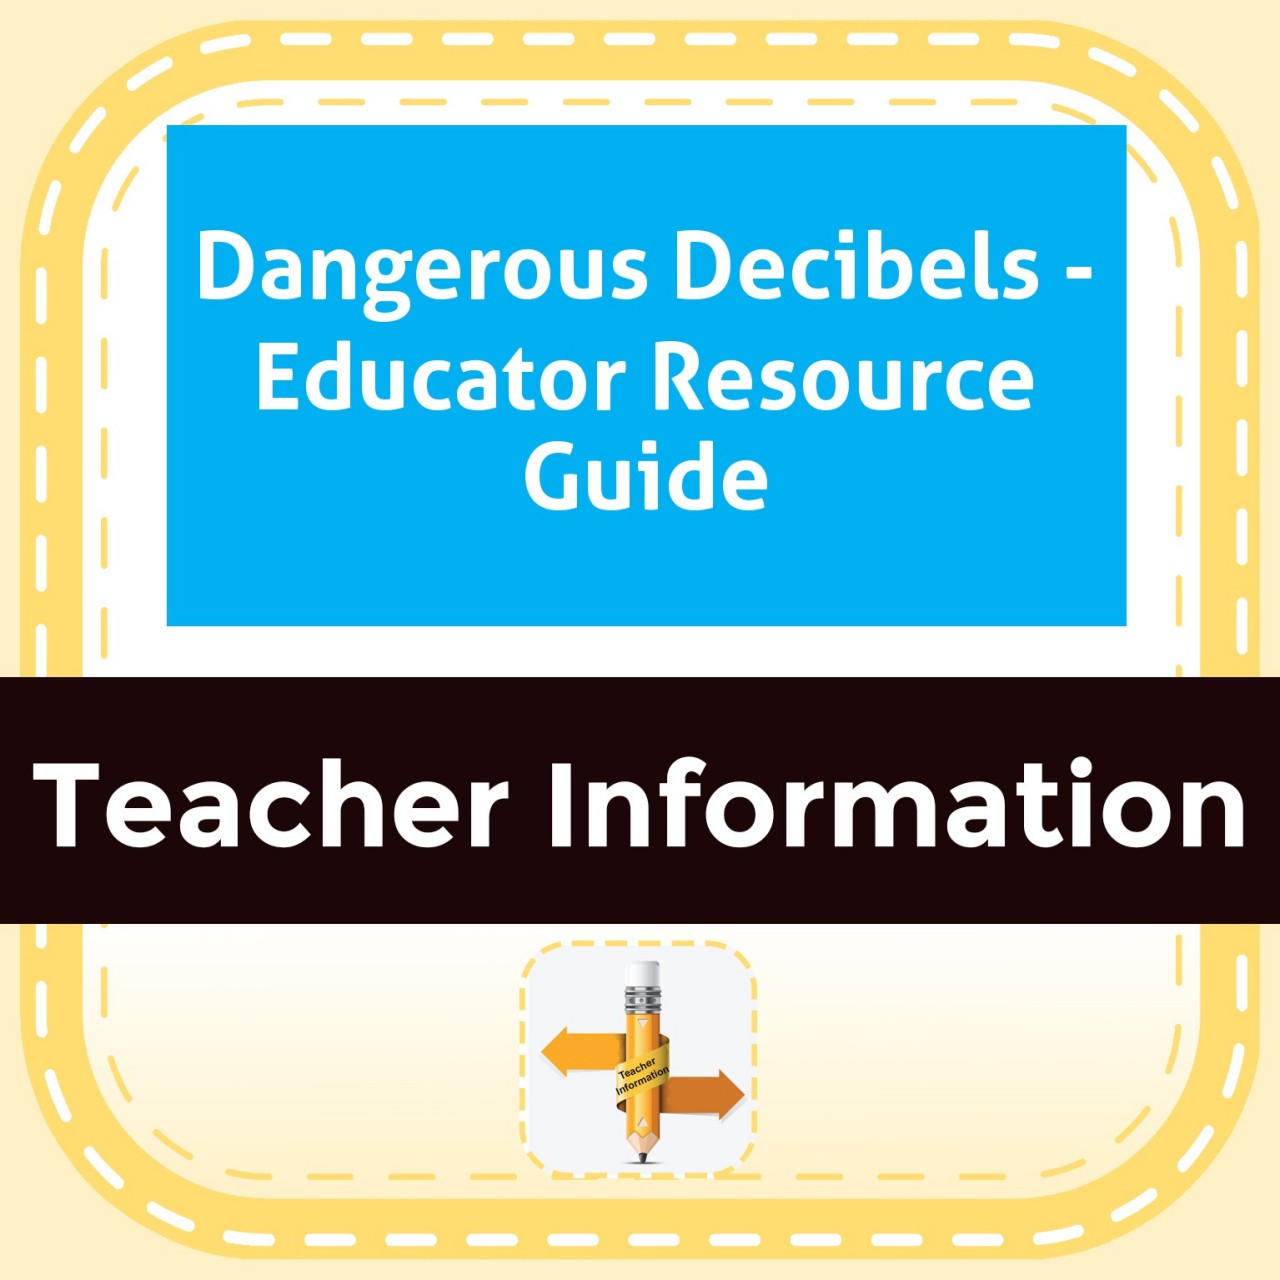 Dangerous Decibels - Educator Resource Guide